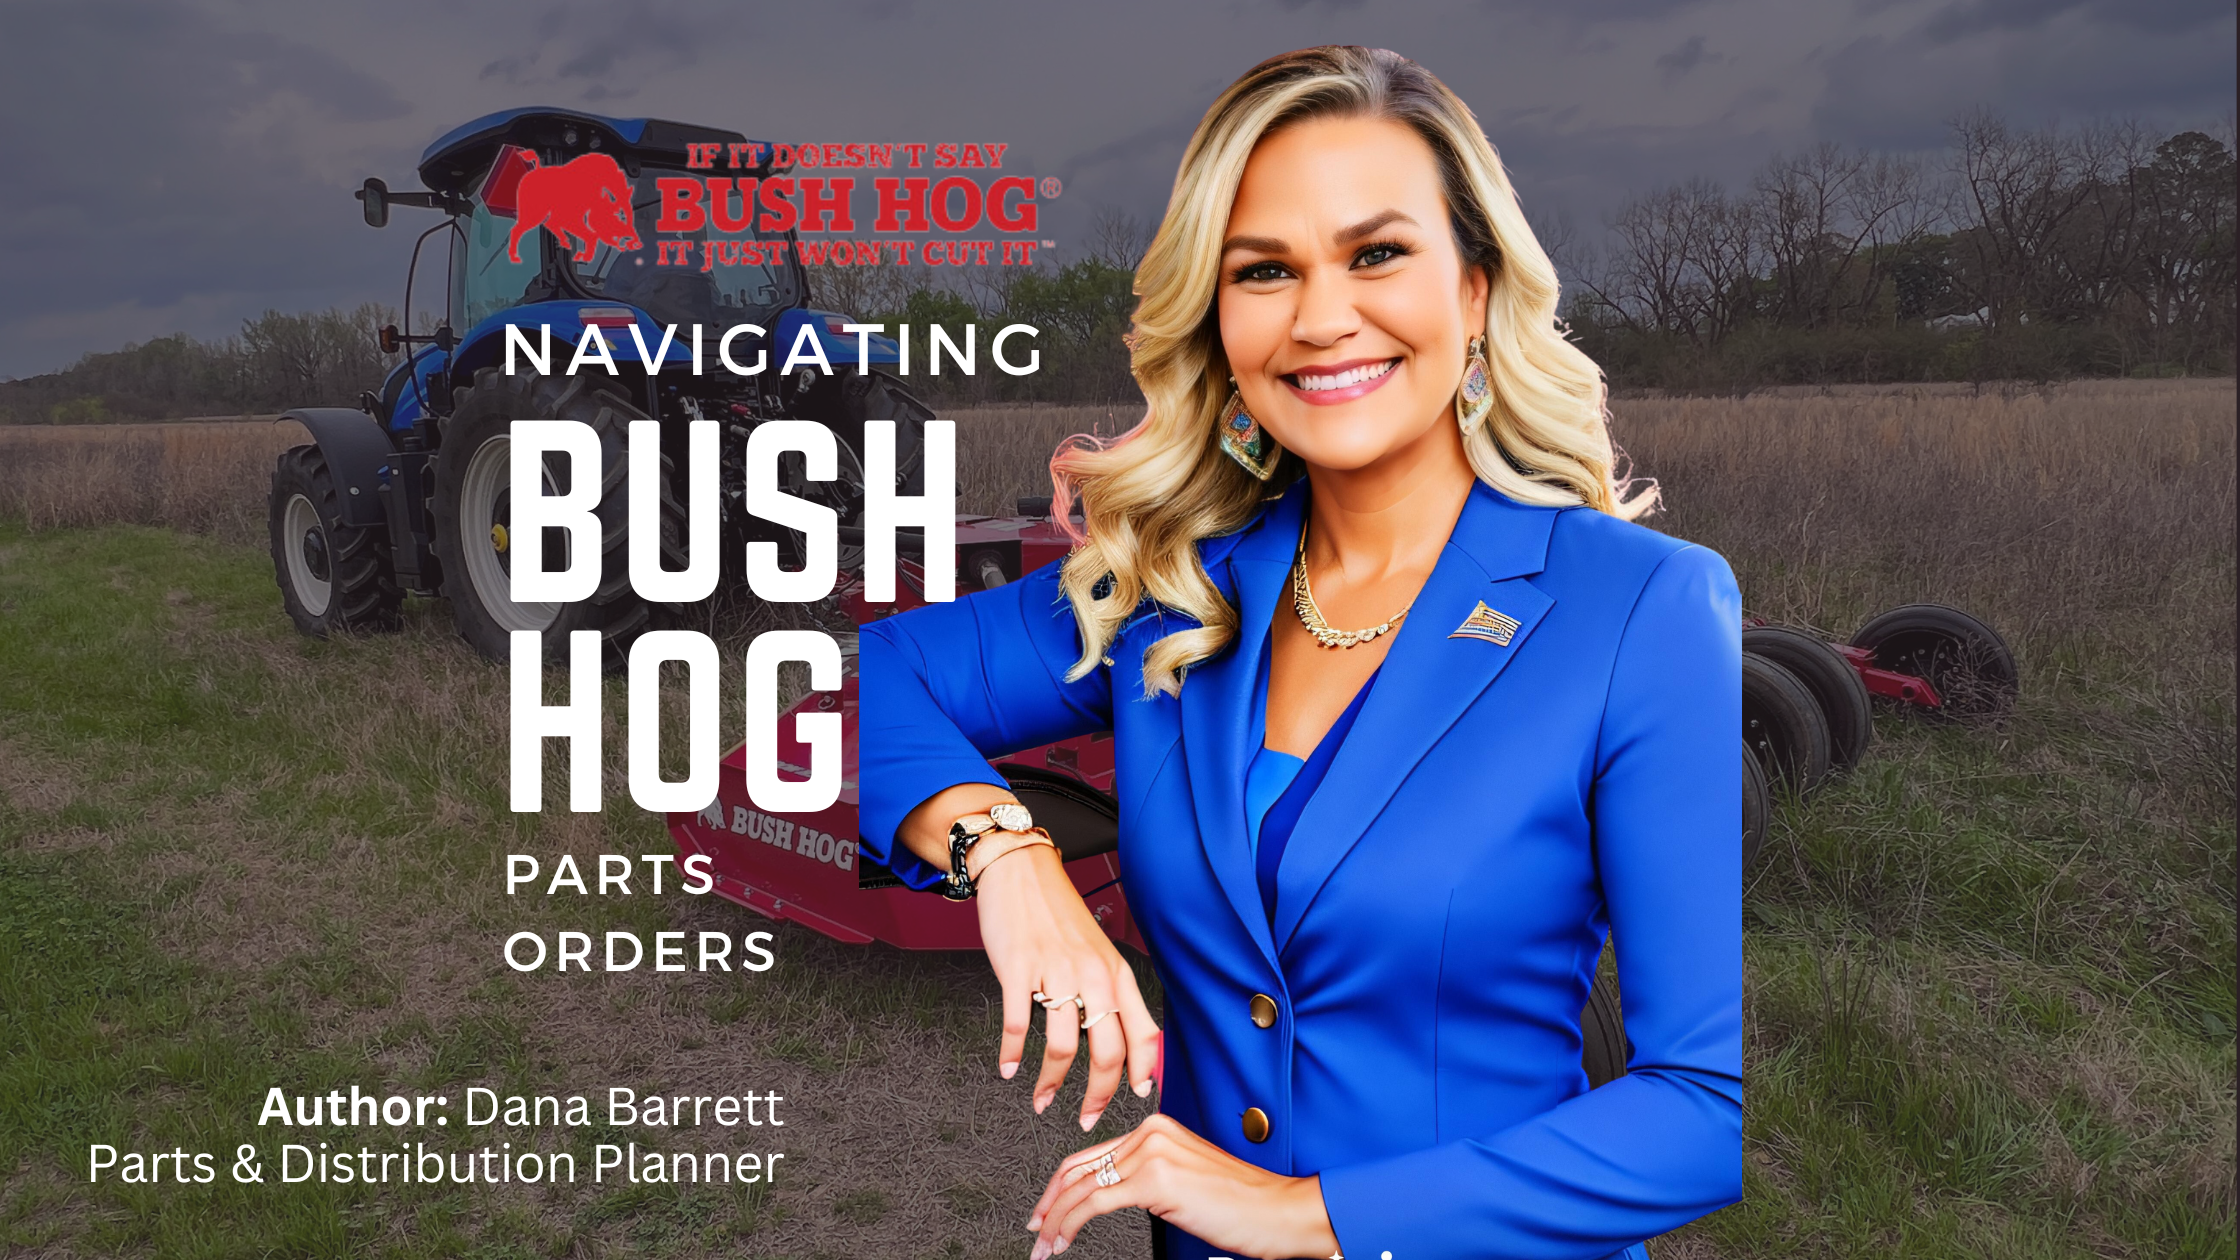 Navigating Bush Hot Parts Orders